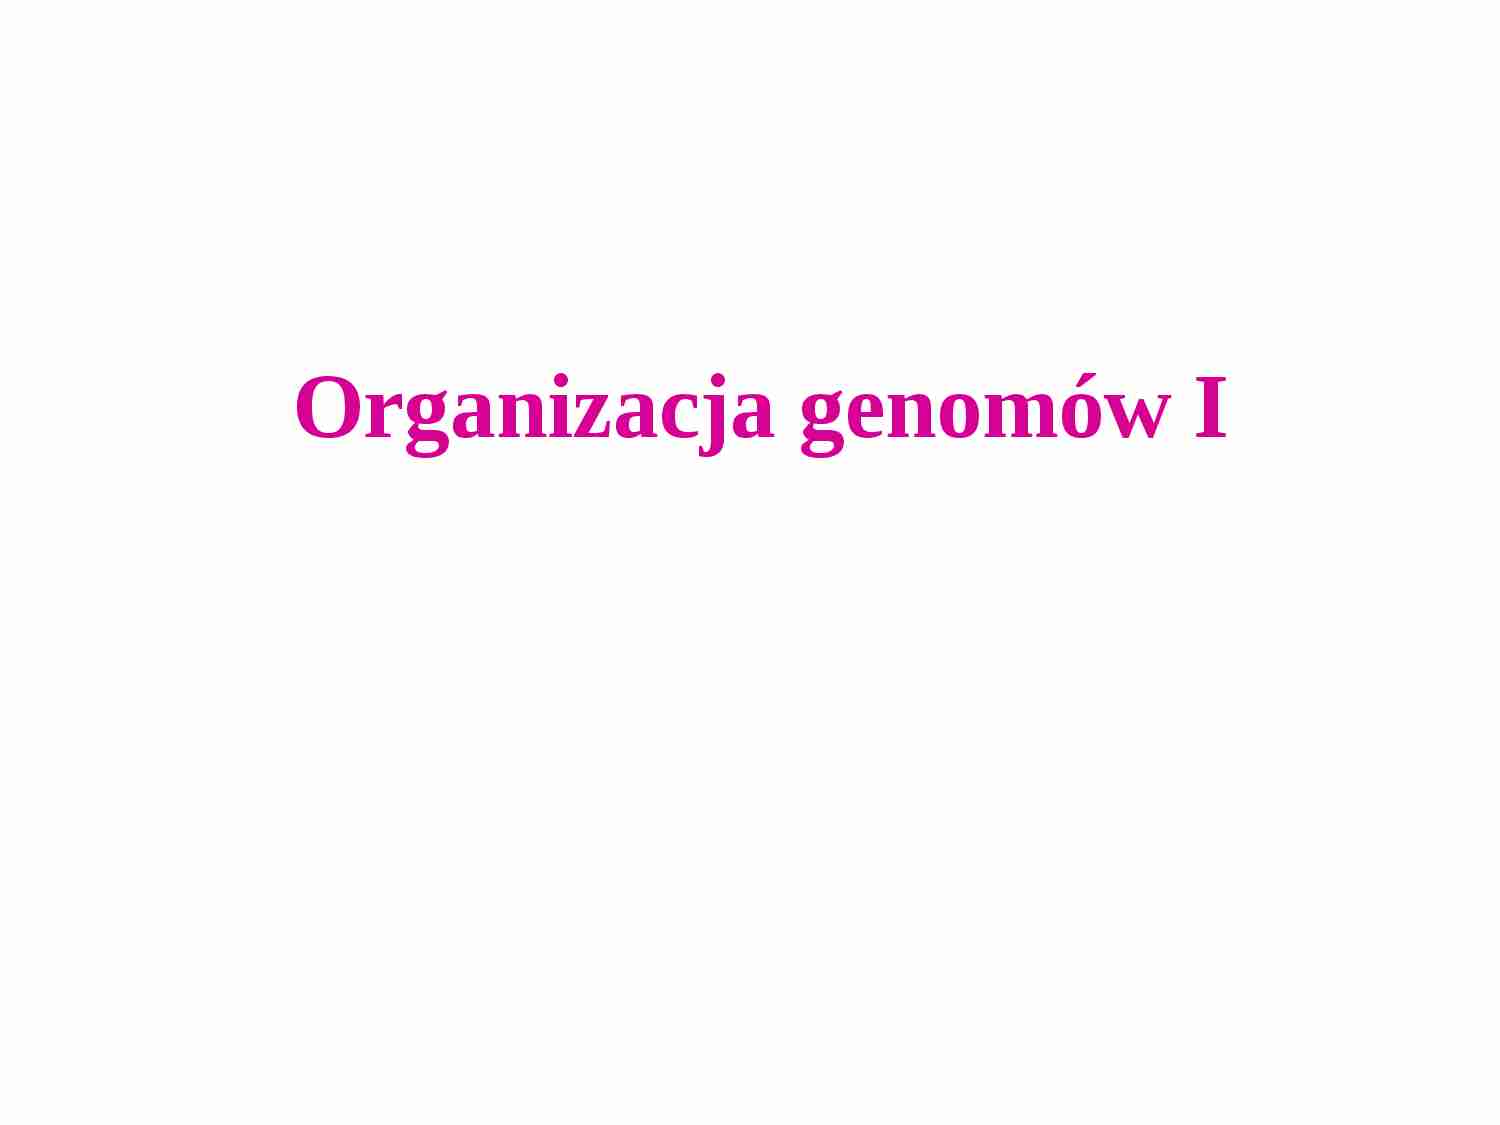 Organizacja genomów - strona 1